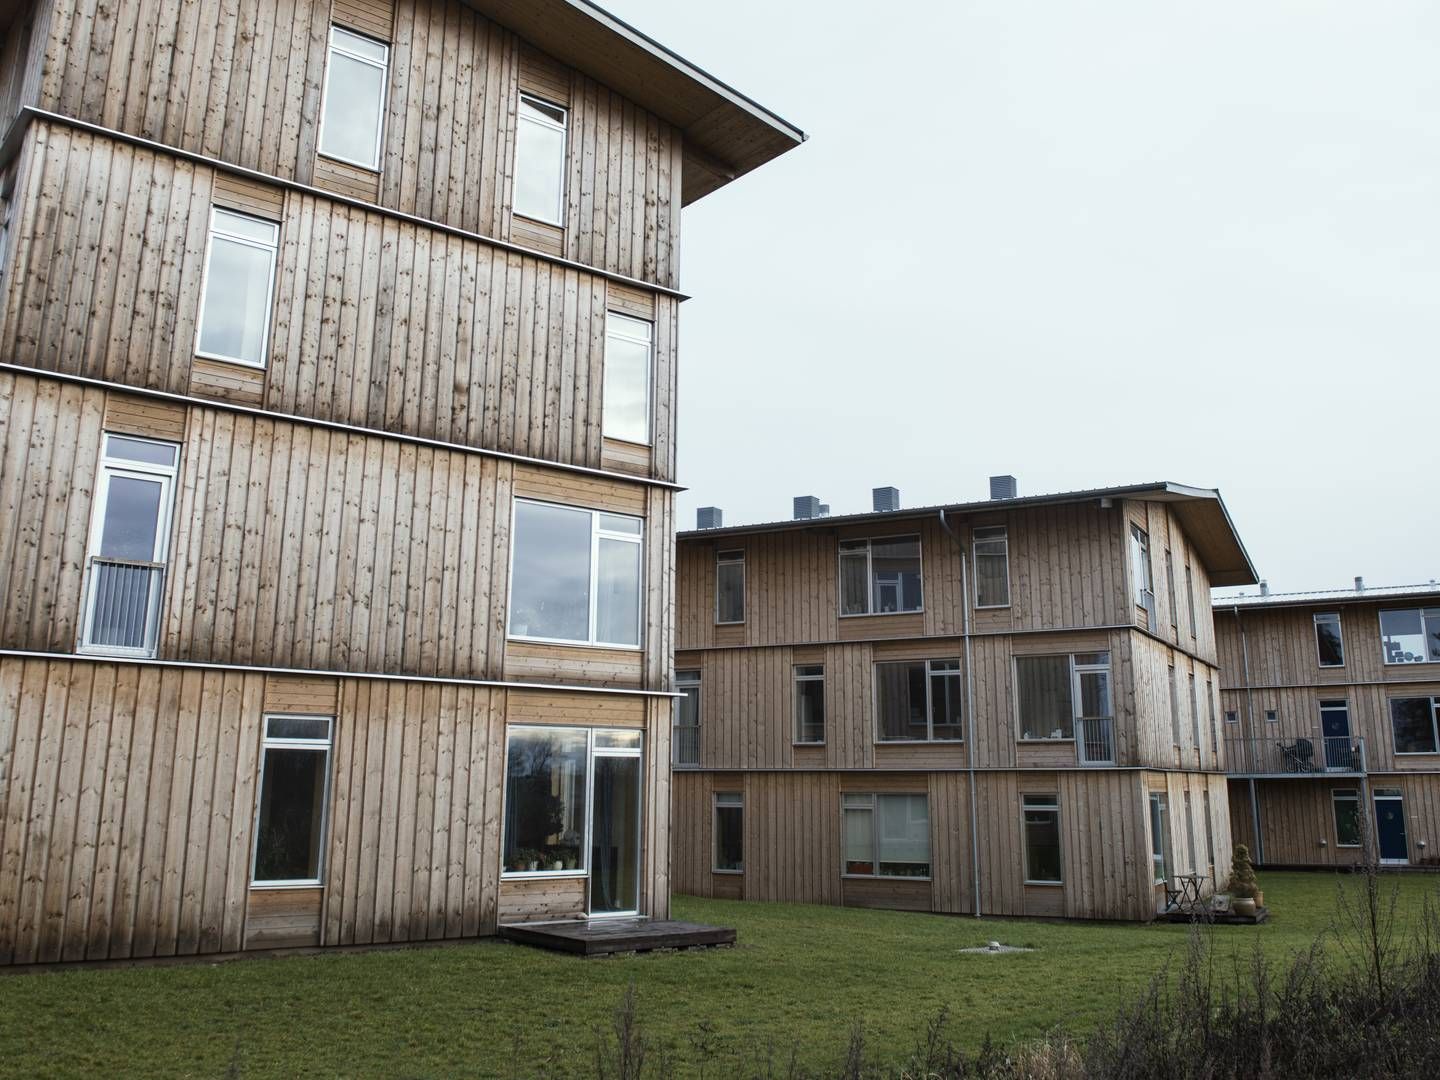 "Grundlæggende bæredygtighedscertificerer Bygningsstyrelsen ikke byggerier af egen drift, fordi det er udgiftsdrivende," fortæller pressechef Carsten Engedal på vegne af styrelsen. | Foto: Morten Lau-Nielsen/JPA